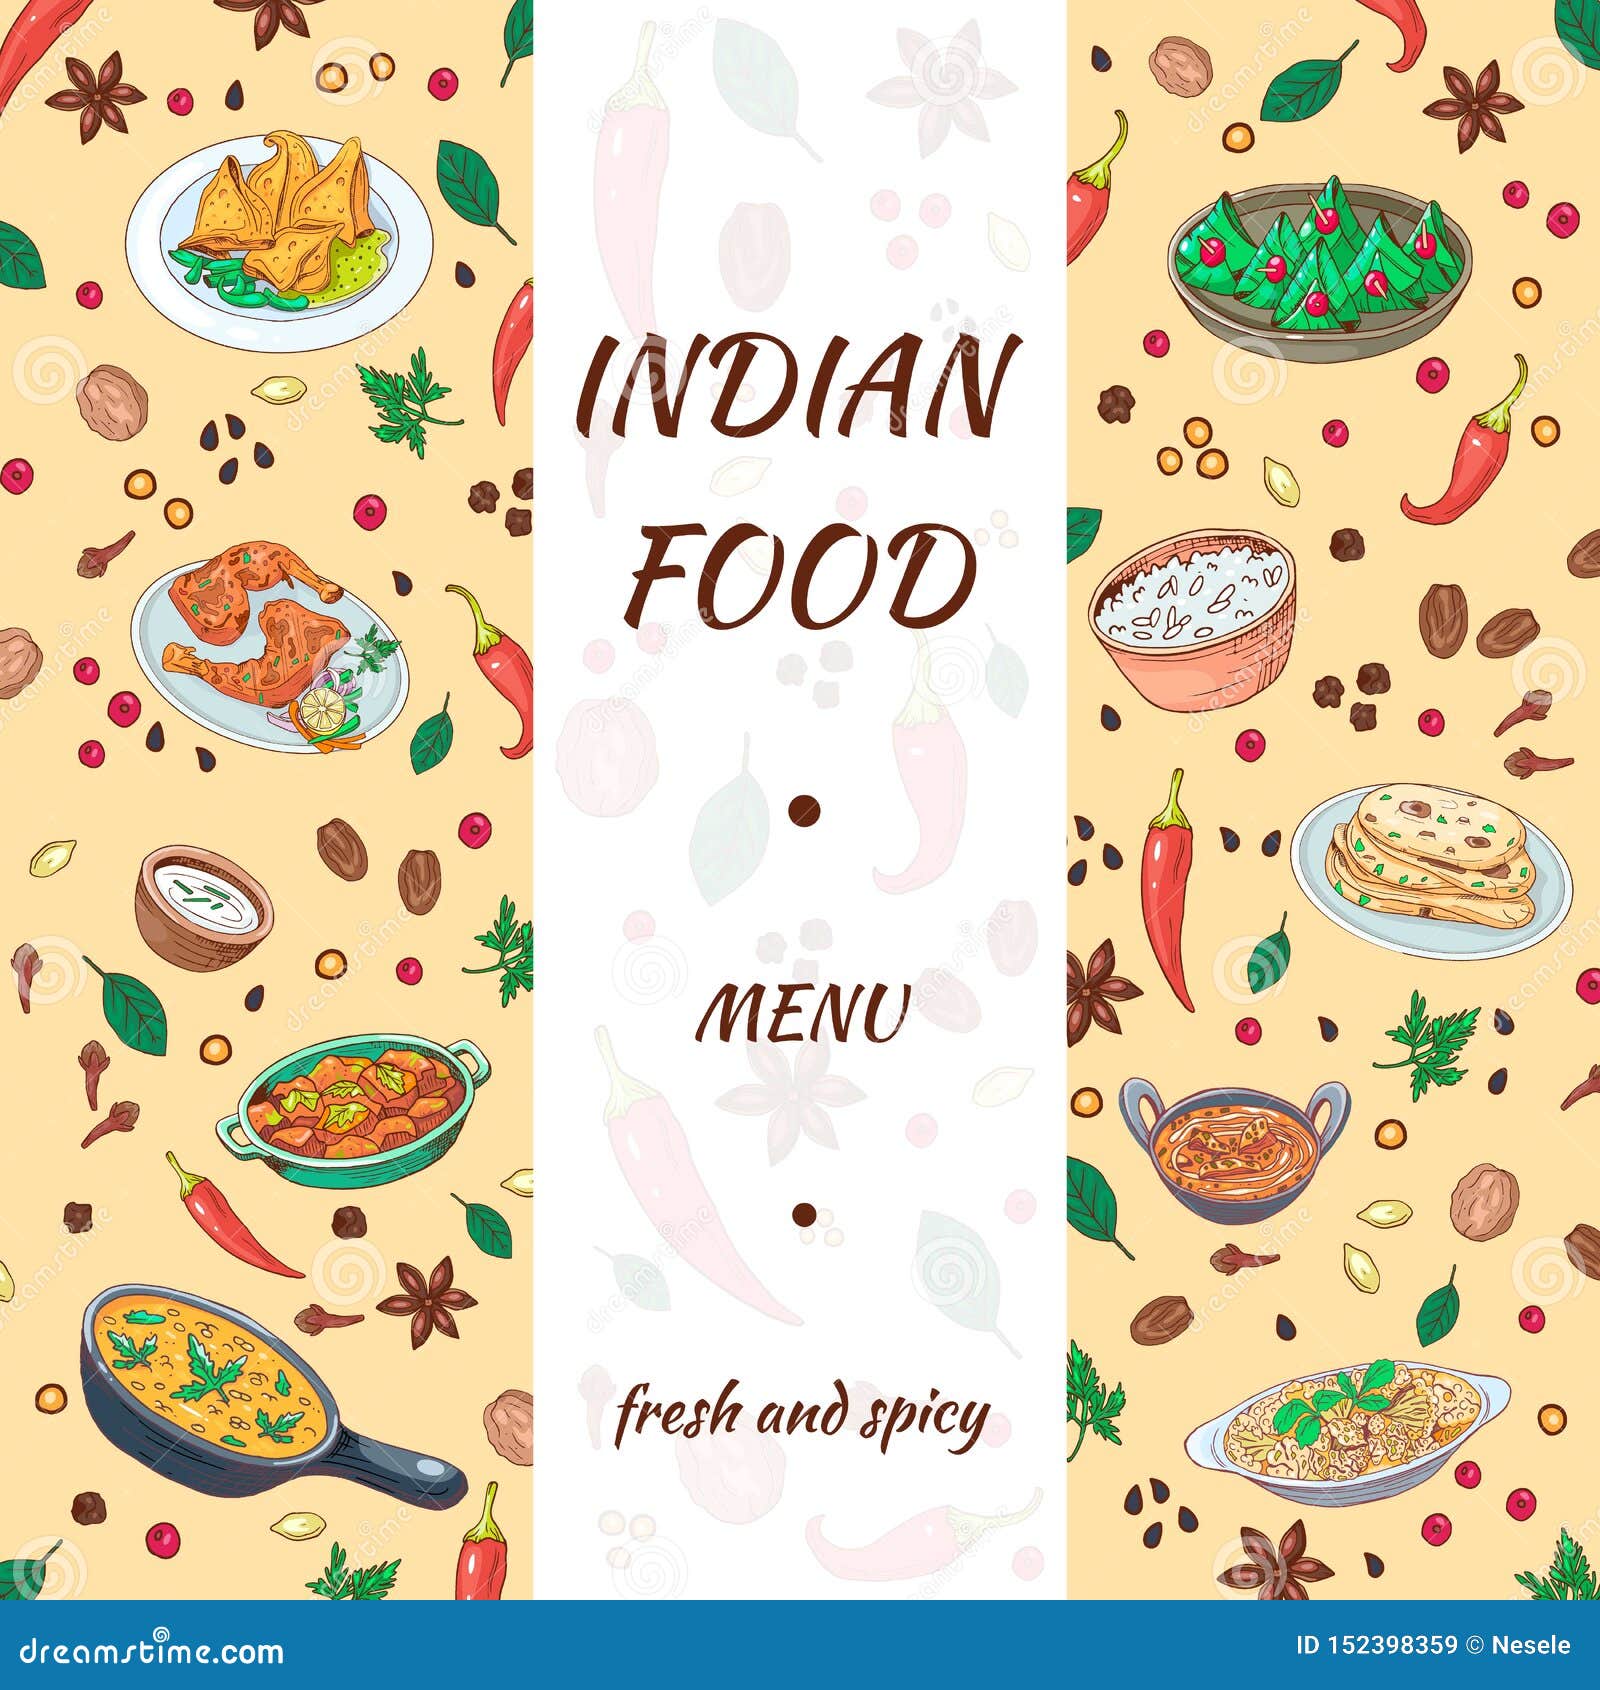 Thiết kế tay vẽ Ẩm thực Ấn Độ đầy màu sắc sẽ khiến bạn say mê ngay từ cái nhìn đầu tiên. Với những nét vẽ tinh tế và màu sắc hài hòa, bức ảnh liên quan đến từ khóa này sẽ khiến bạn có thêm động lực để khám phá thế giới ẩm thực đặc sắc của Ấn Độ.